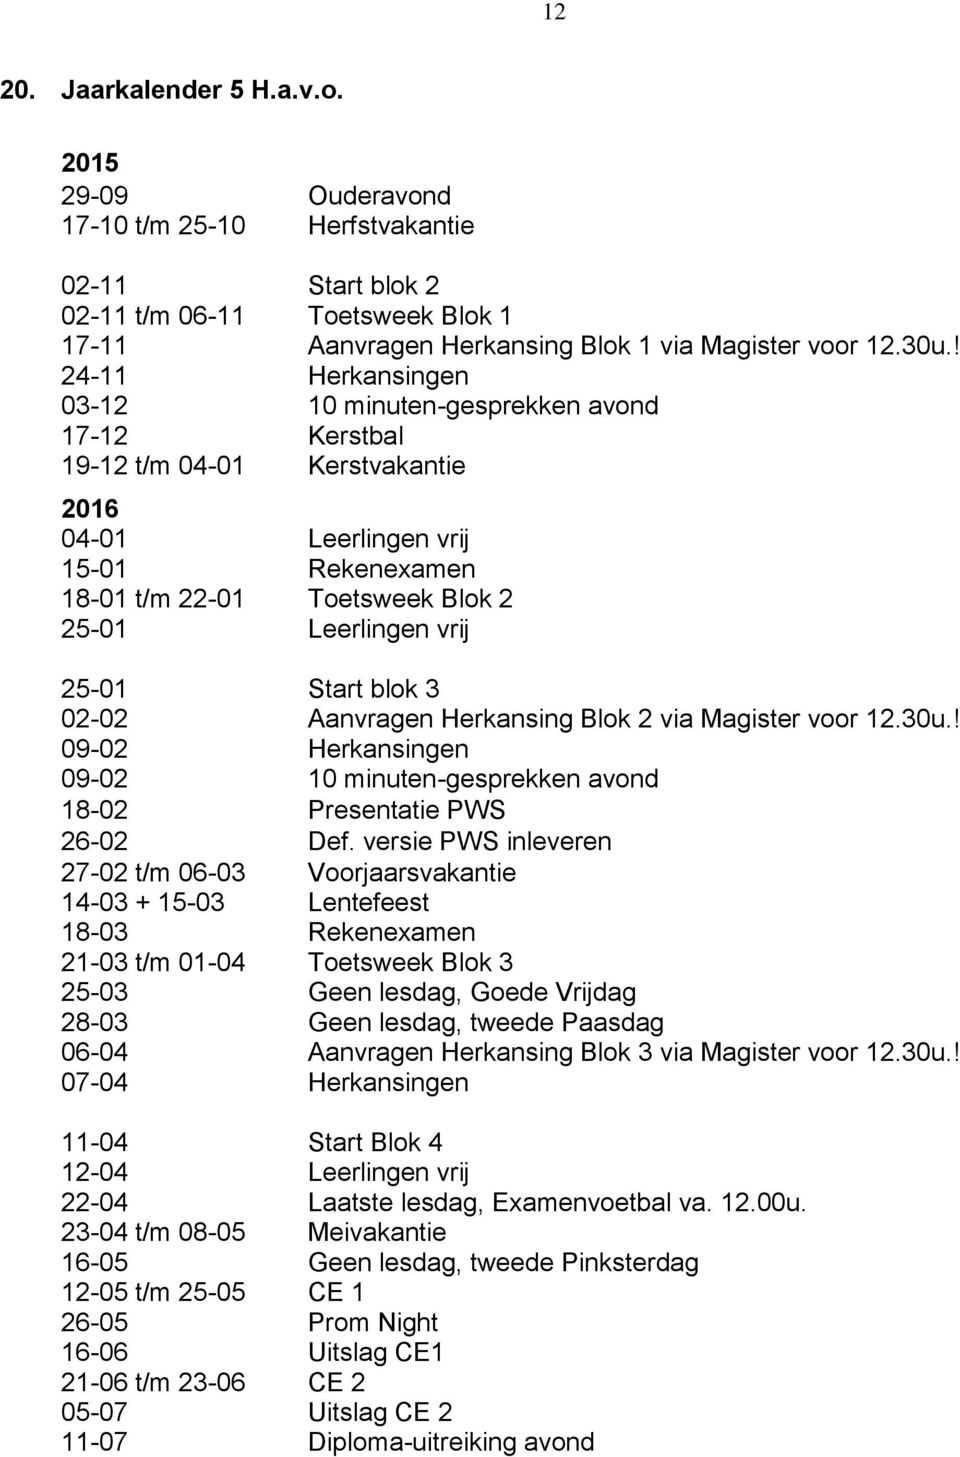 25-01 Start 3 02-02 Aanvragen Herkansing Blok 2 via Magister voor 12.30u.! 09-02 Herkansingen 09-02 10 minuten-gesprekken avond 18-02 Presentatie PWS 26-02 Def.